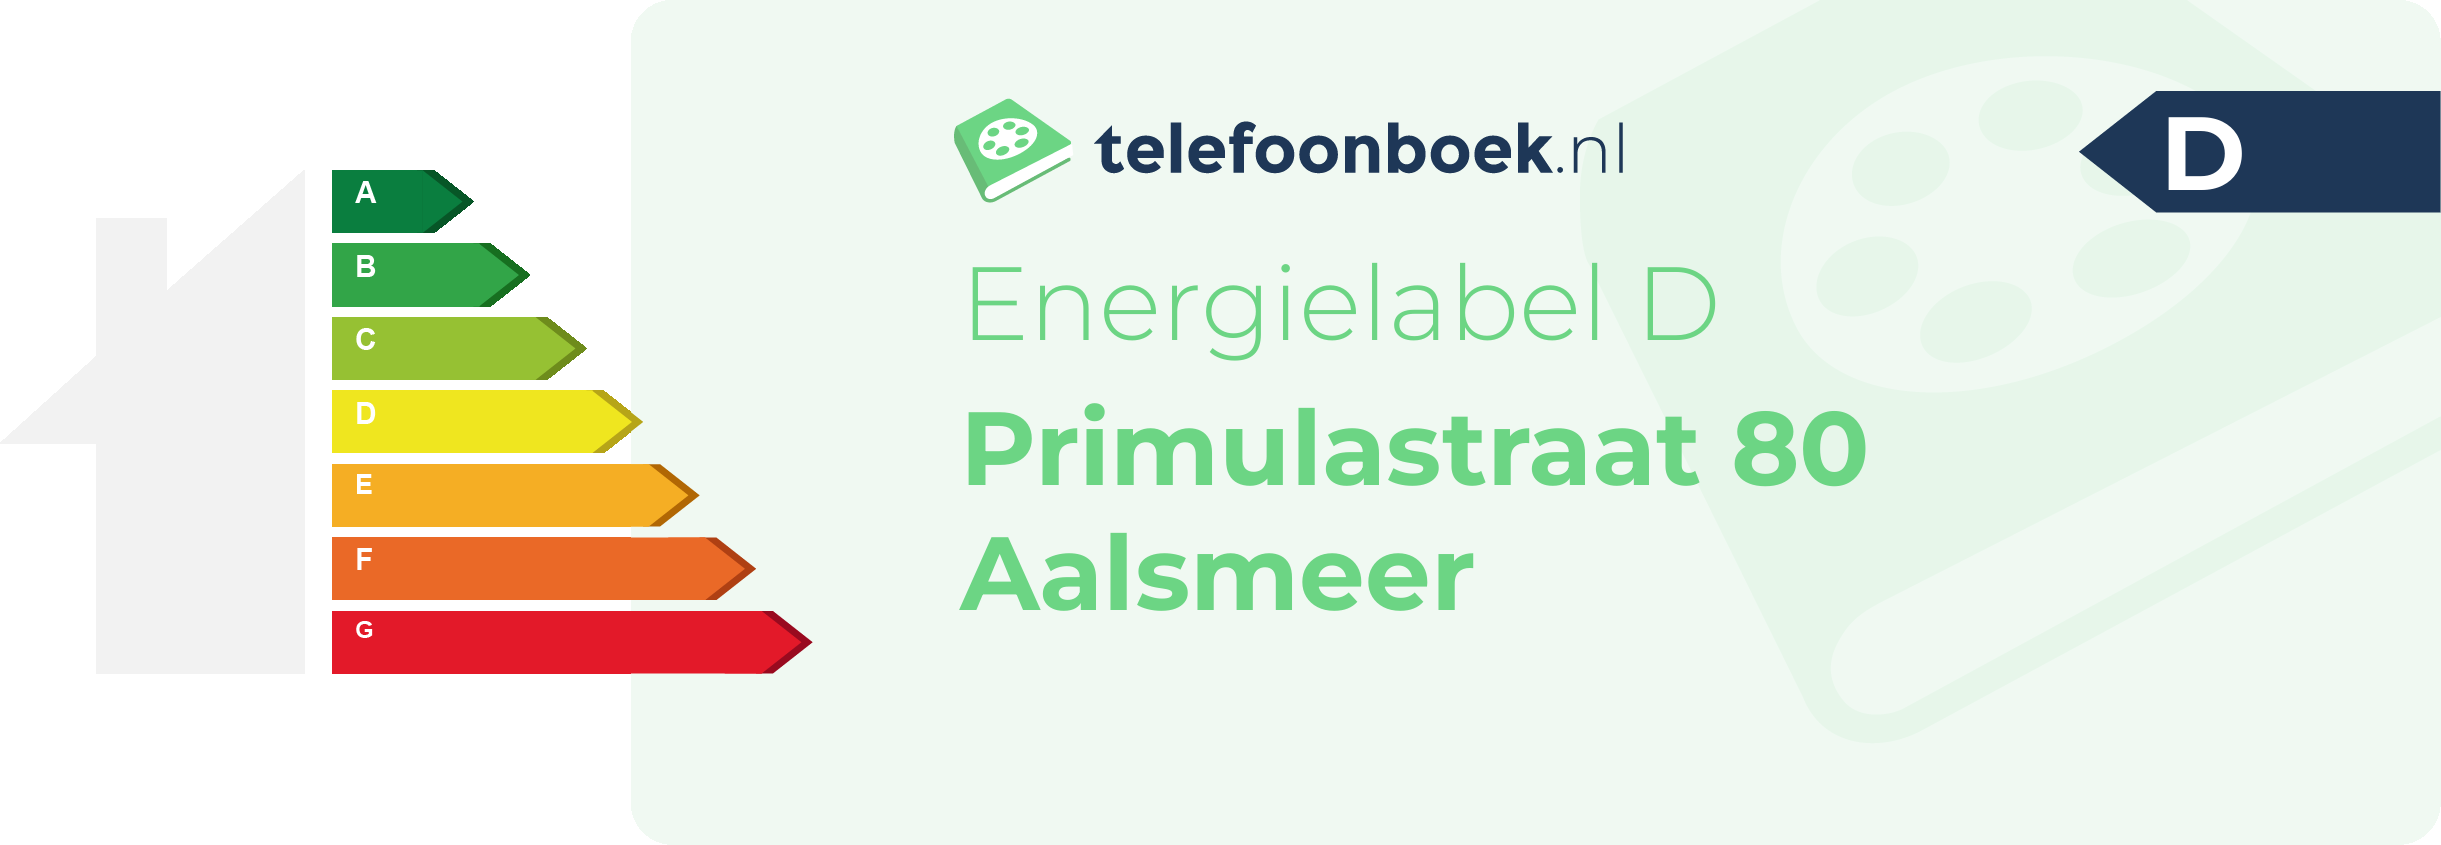 Energielabel Primulastraat 80 Aalsmeer